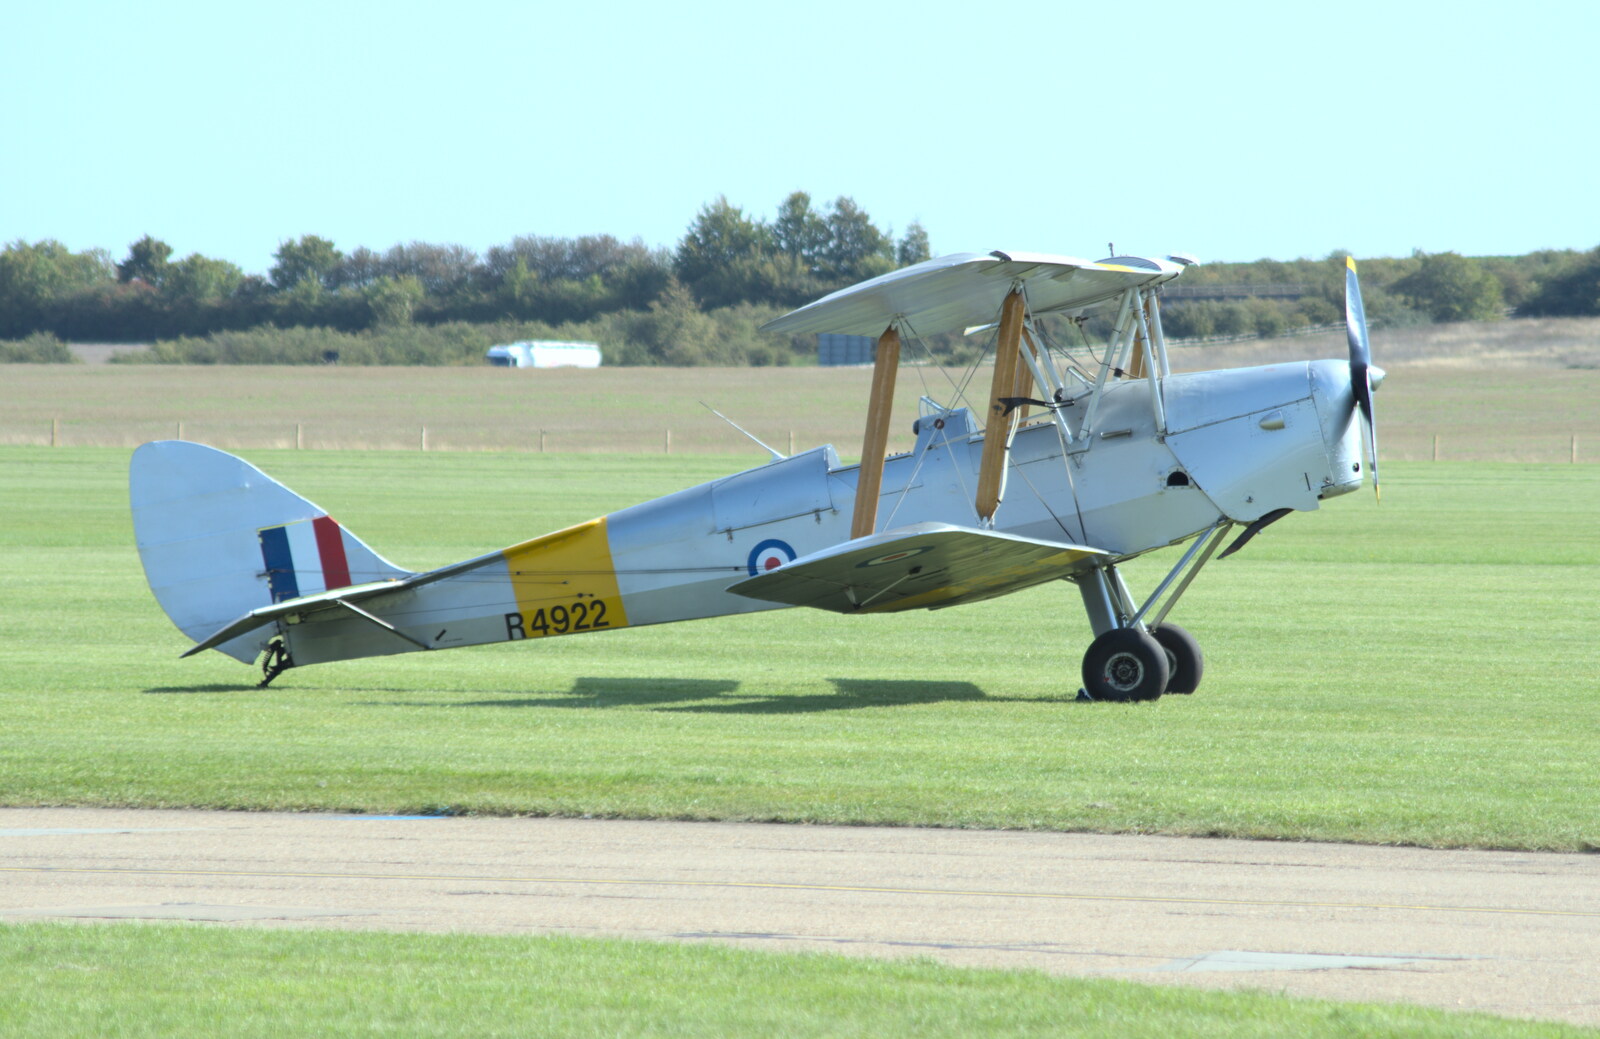 Tiger Moth R4922 from The Duxford Dash, IWM Duxford, Cambridge - 13th September 2020